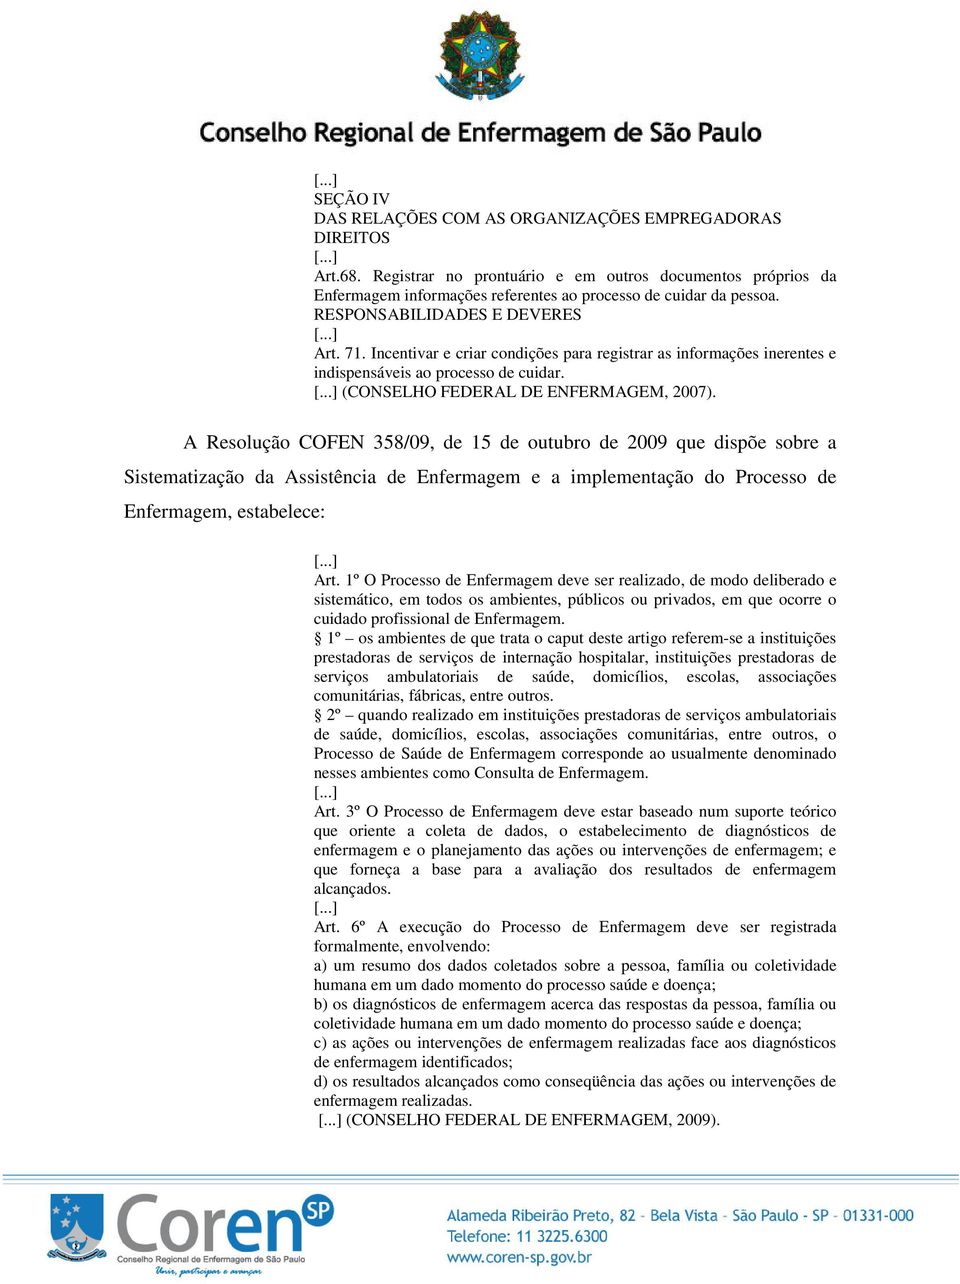 A Resolução COFEN 358/09, de 15 de outubro de 2009 que dispõe sobre a Sistematização da Assistência de Enfermagem e a implementação do Processo de Enfermagem, estabelece: Art.